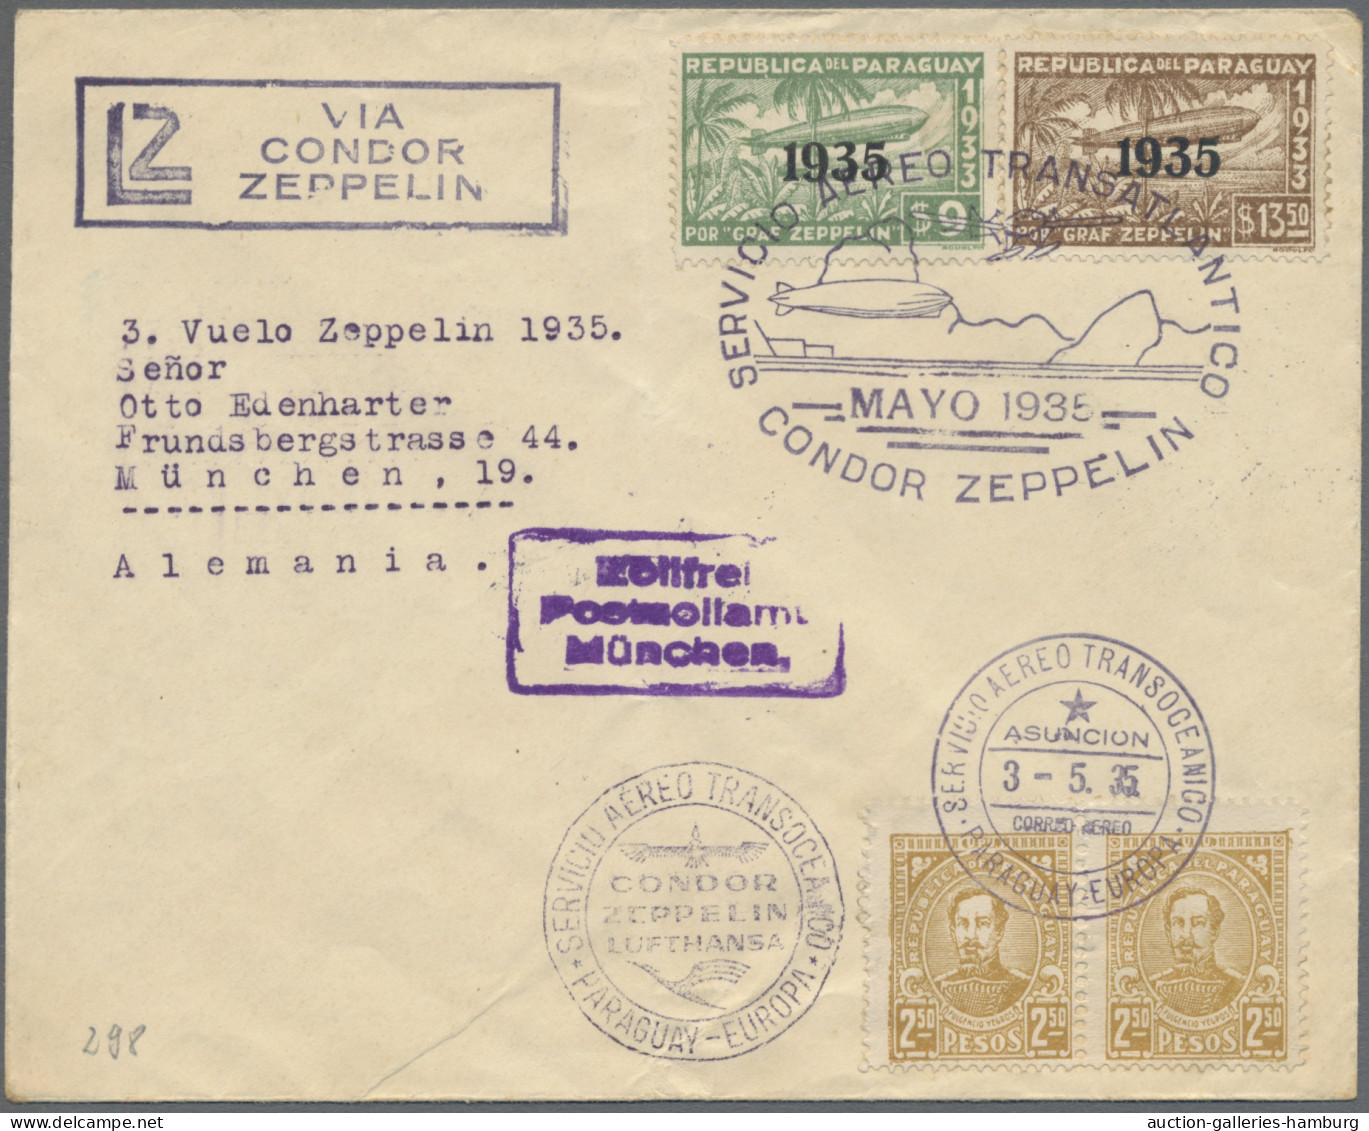 Thematics: zeppelin: 1930-1938, Sammlung der Zeppelinmotive der 1930er Jahre in